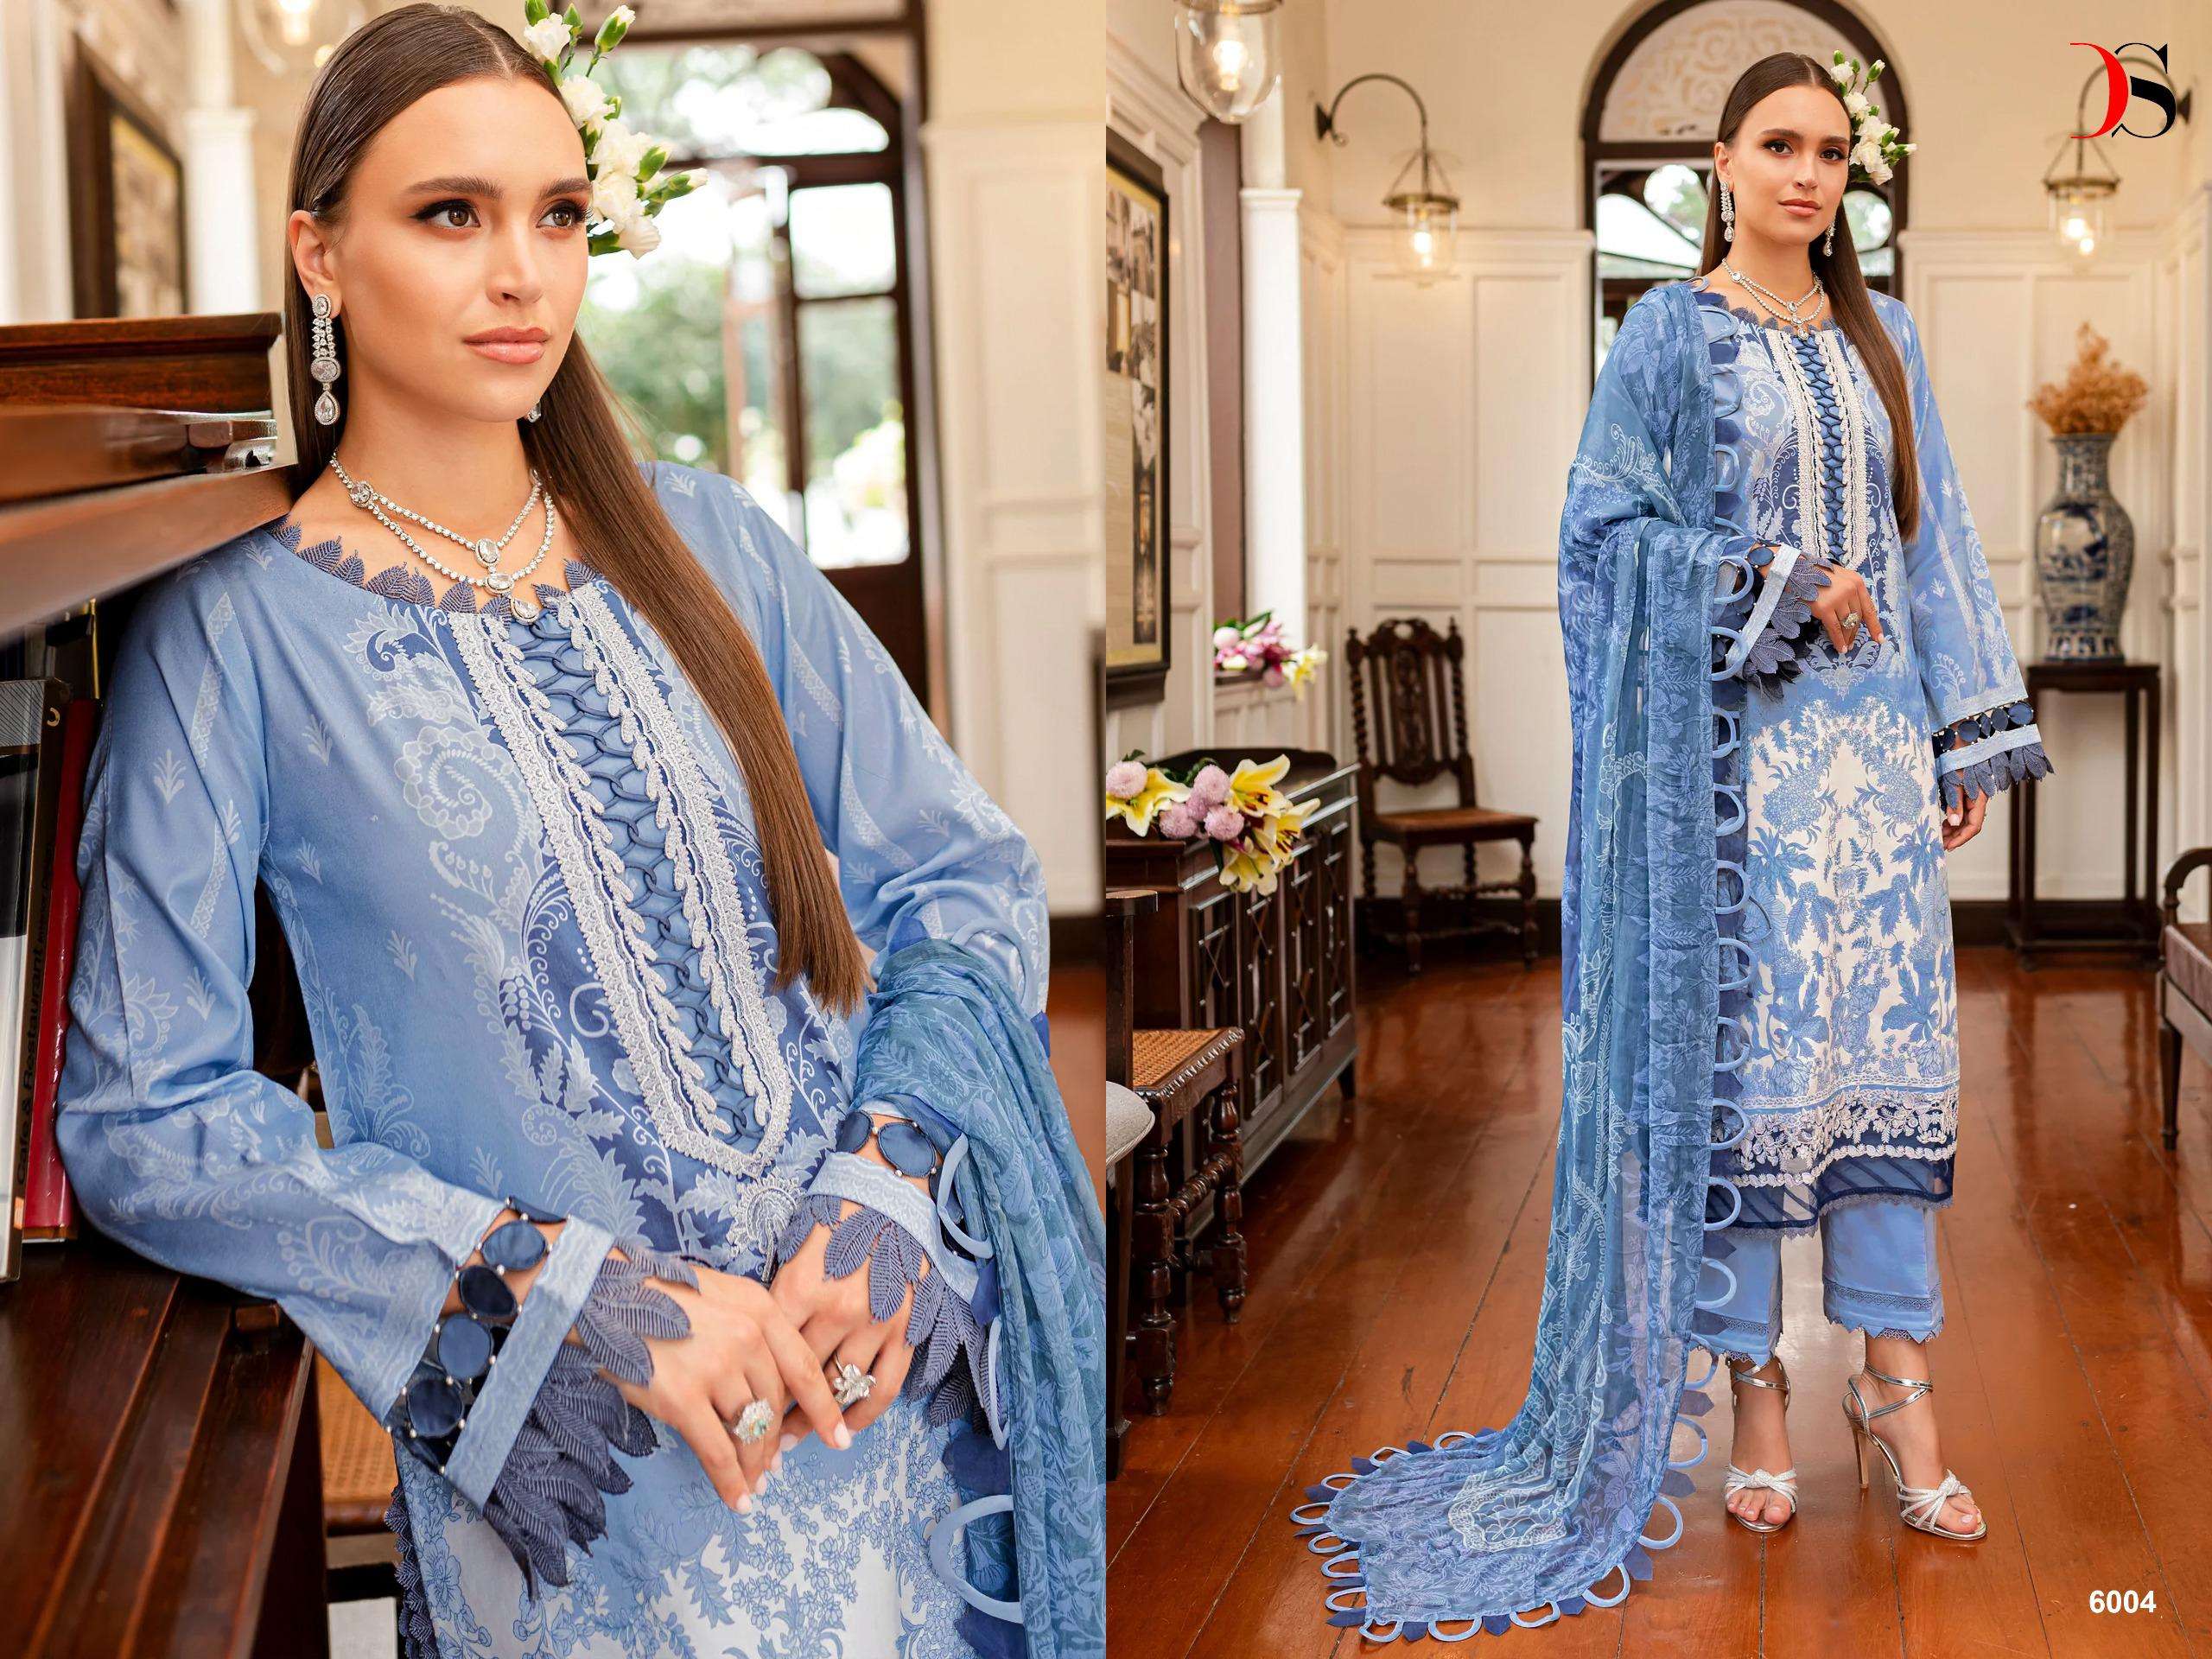 Deepsy Firdous Queens Court 6 Chiffon Dupatta Pakistani Suits Wholesale catalog